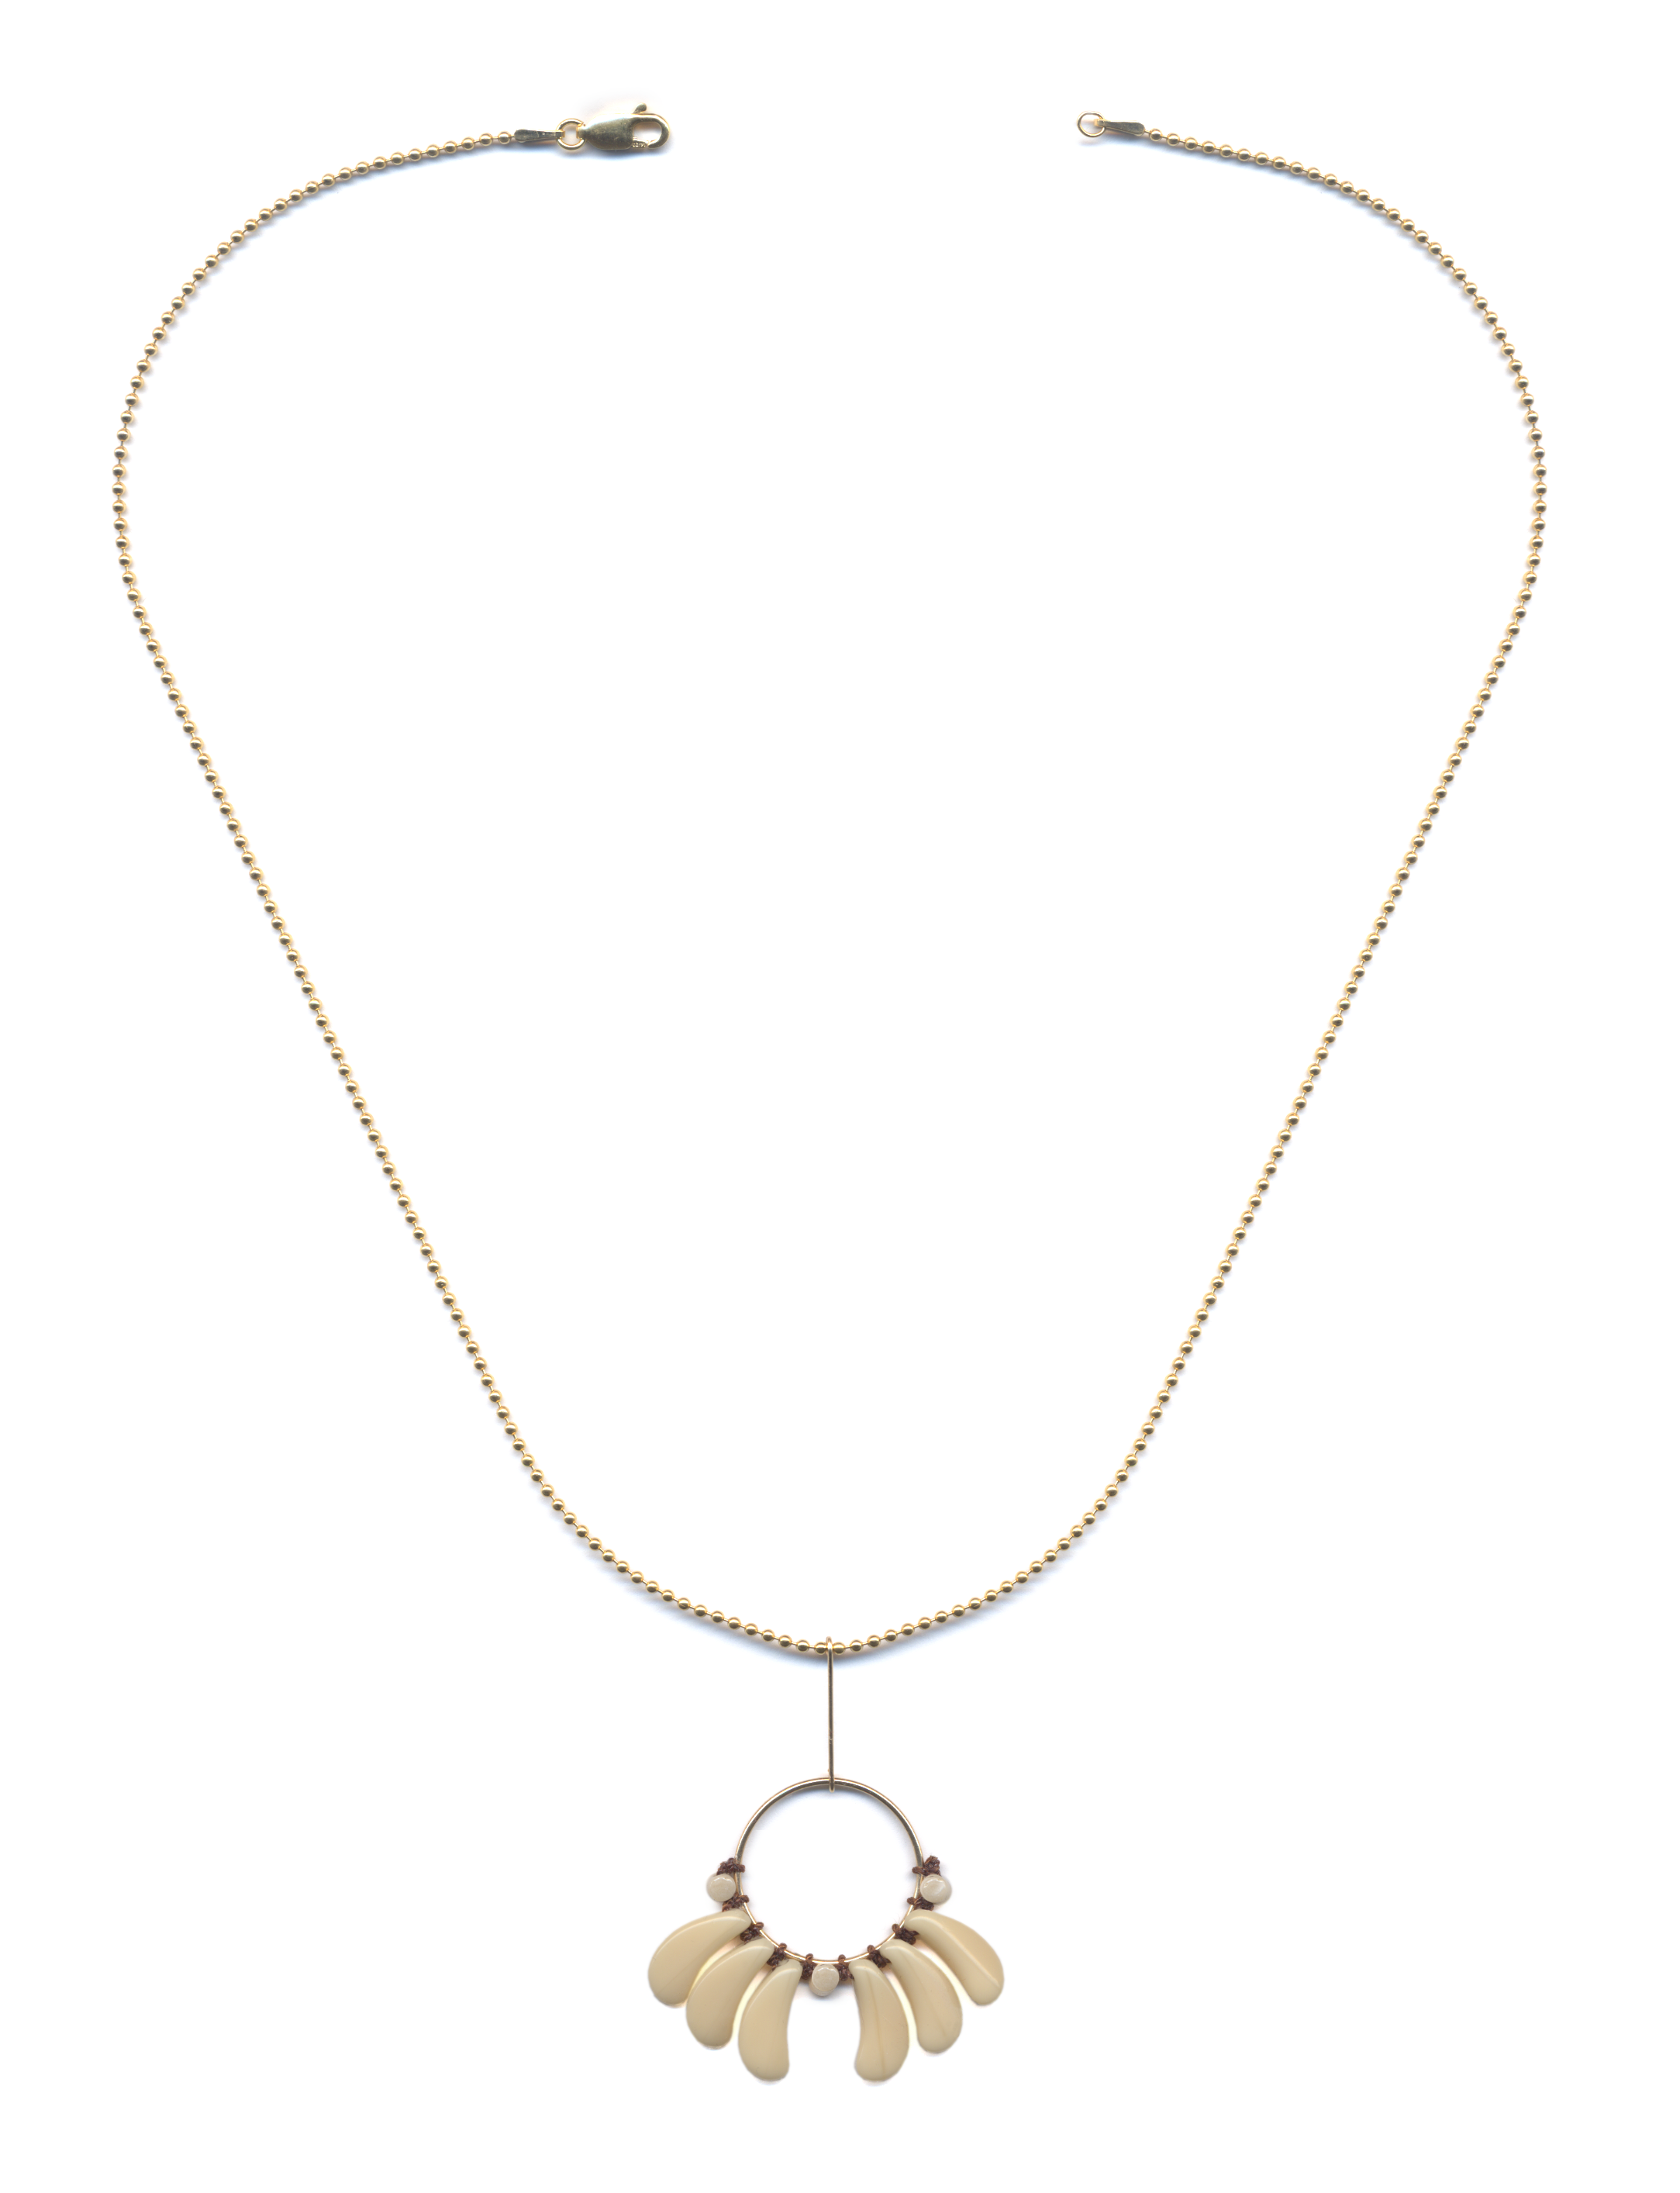 N2105 (Wilt) Necklace